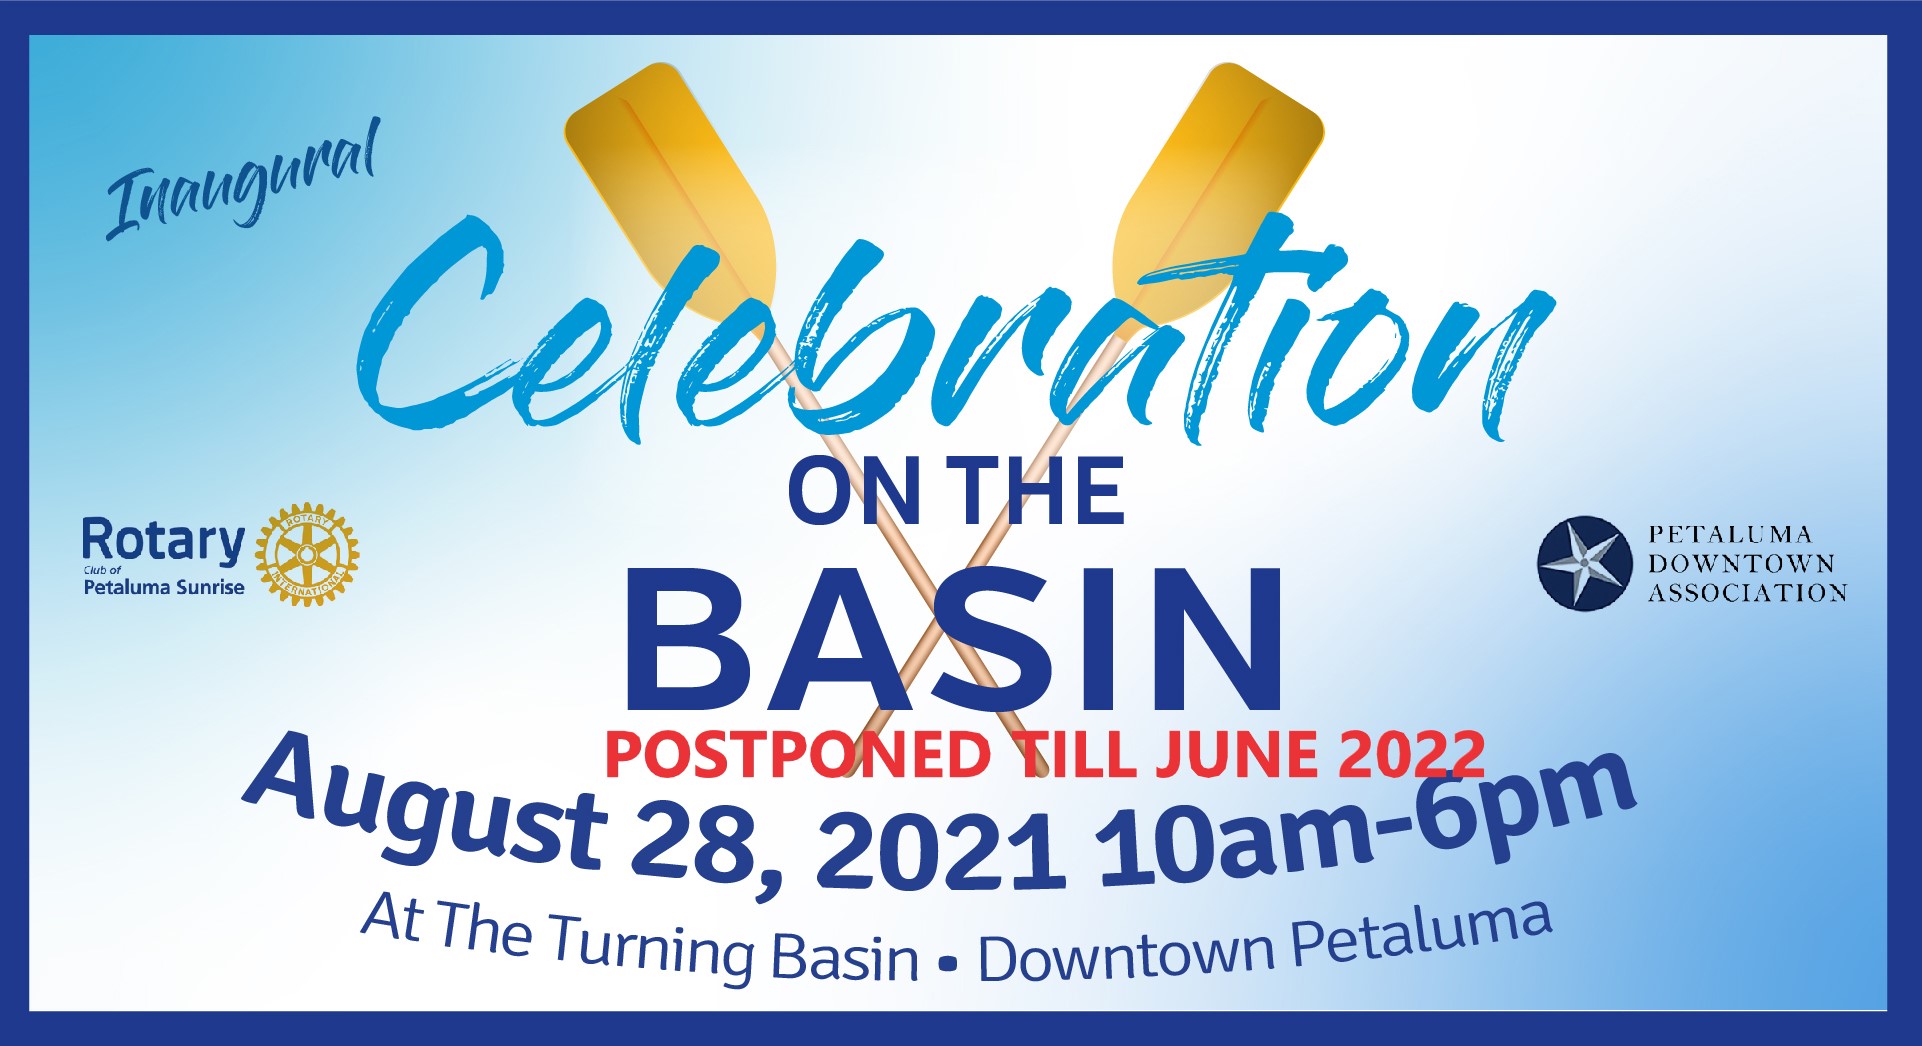 Celebration on the Basin
2022 Date TBD